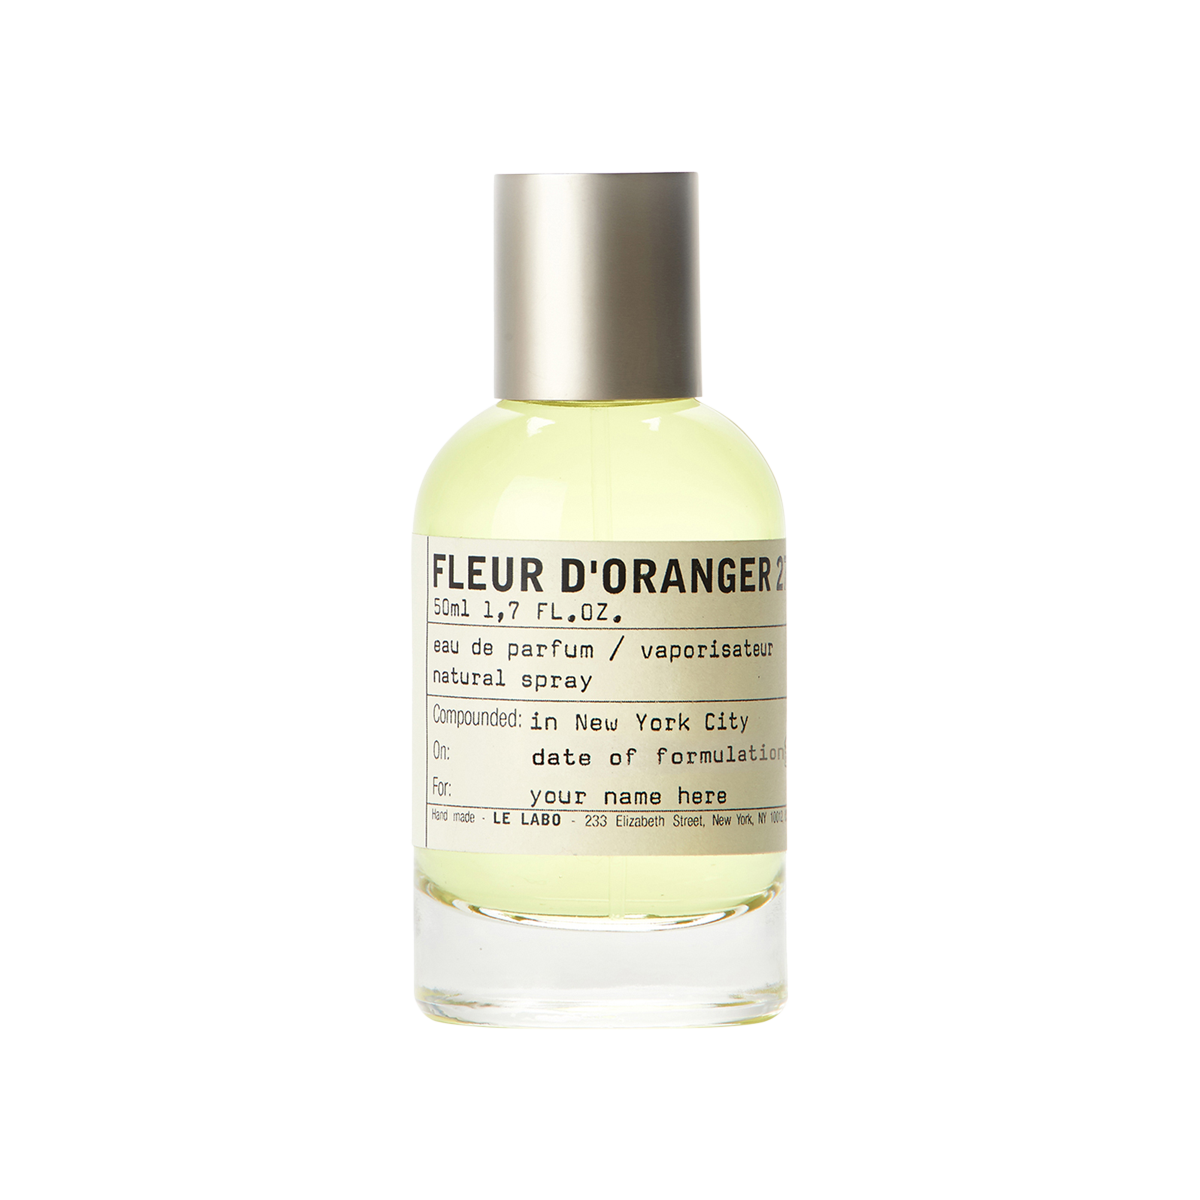 Le Labo fragrances - Fleur d'Oranger 27 Eau de Parfum